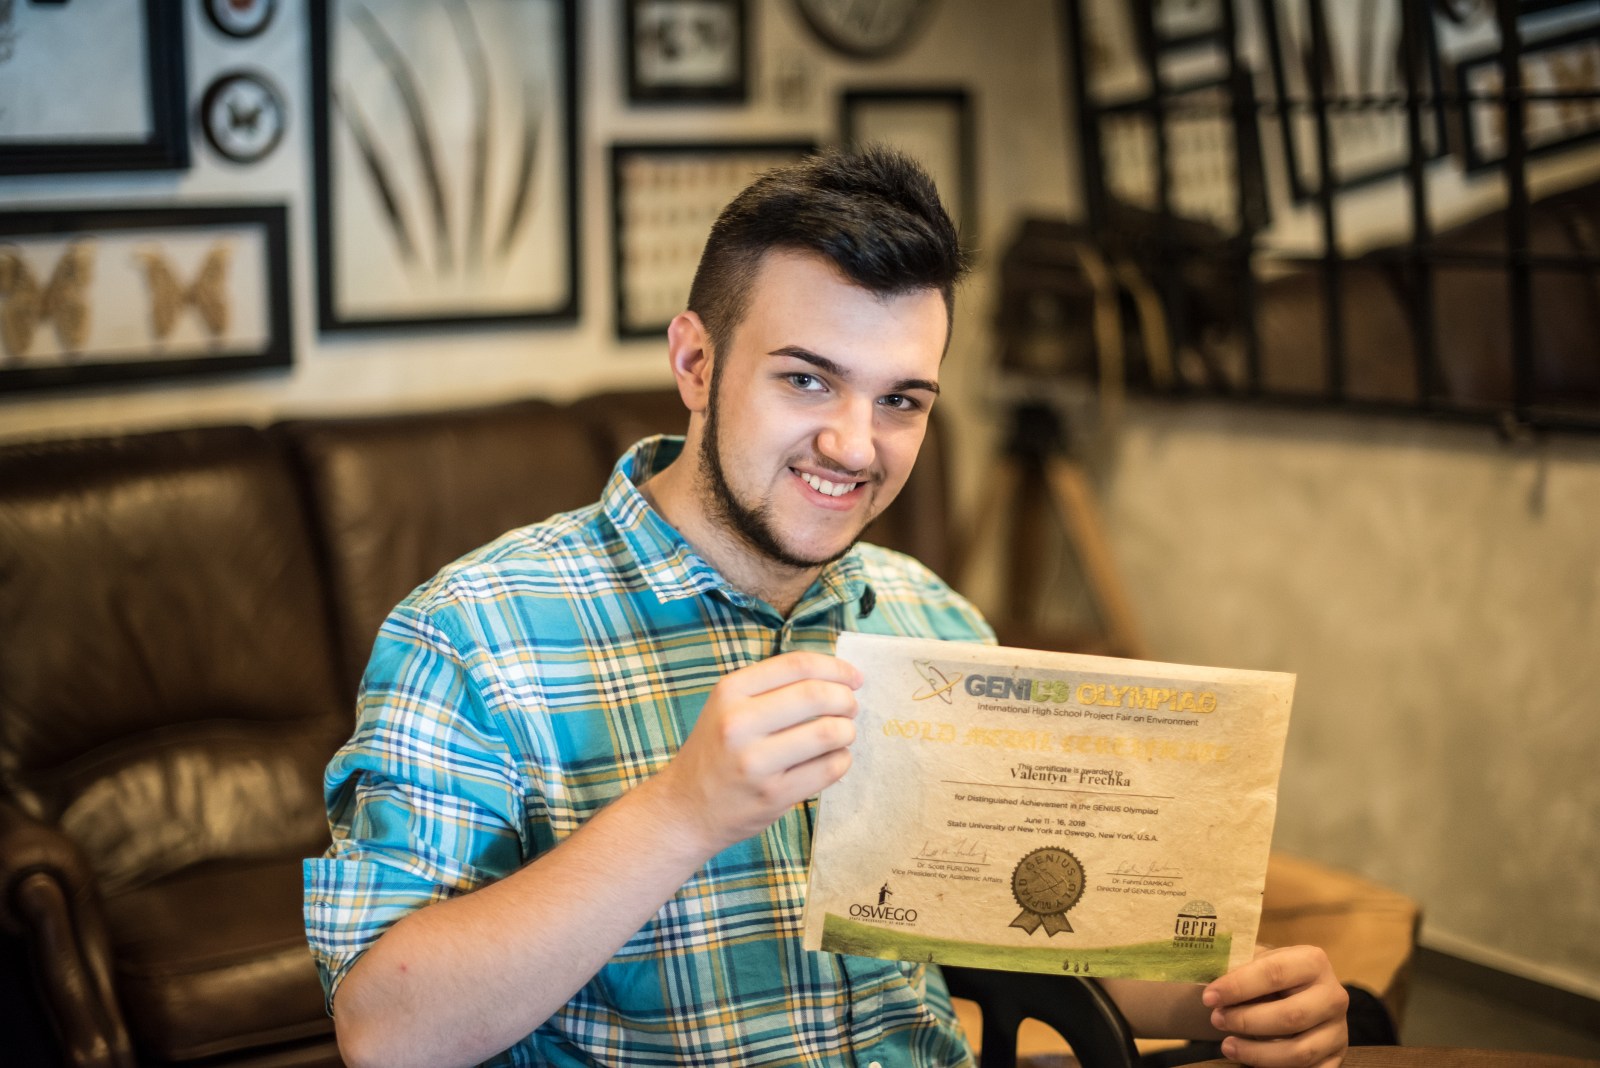 17-річний закарпатець Валентин Фречка – автор технології створення паперу з опалого листя.